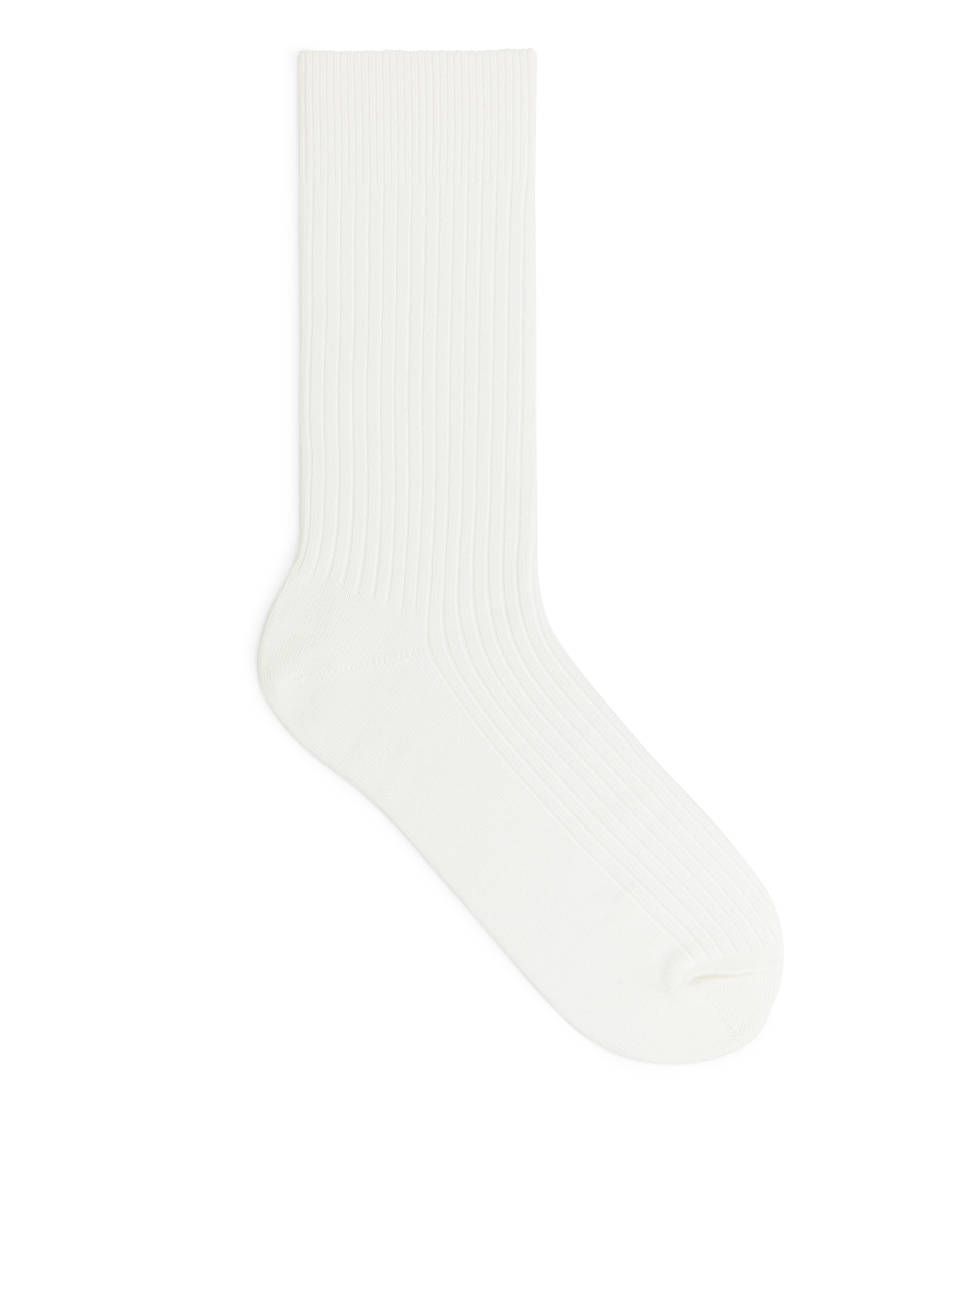 Gerippte Socken aus Supima-Baumwolle
            
            €5 | ARKET